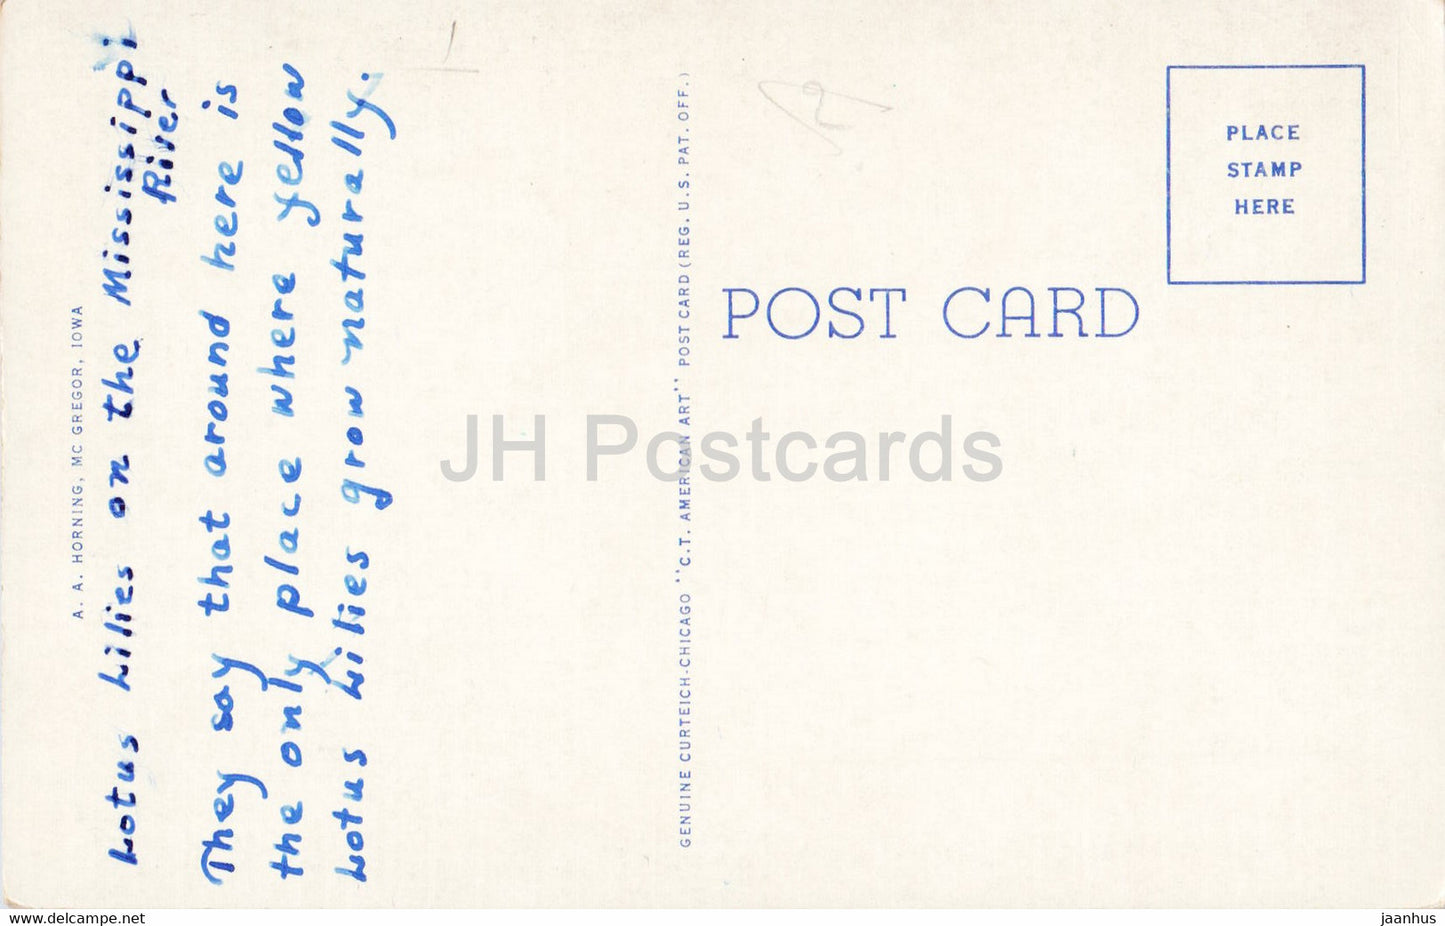 Seerosenteich am Mississippi bei McGregor - Iowa und Prairie du Chien - Wisconsin - alte Postkarte - USA - gebraucht